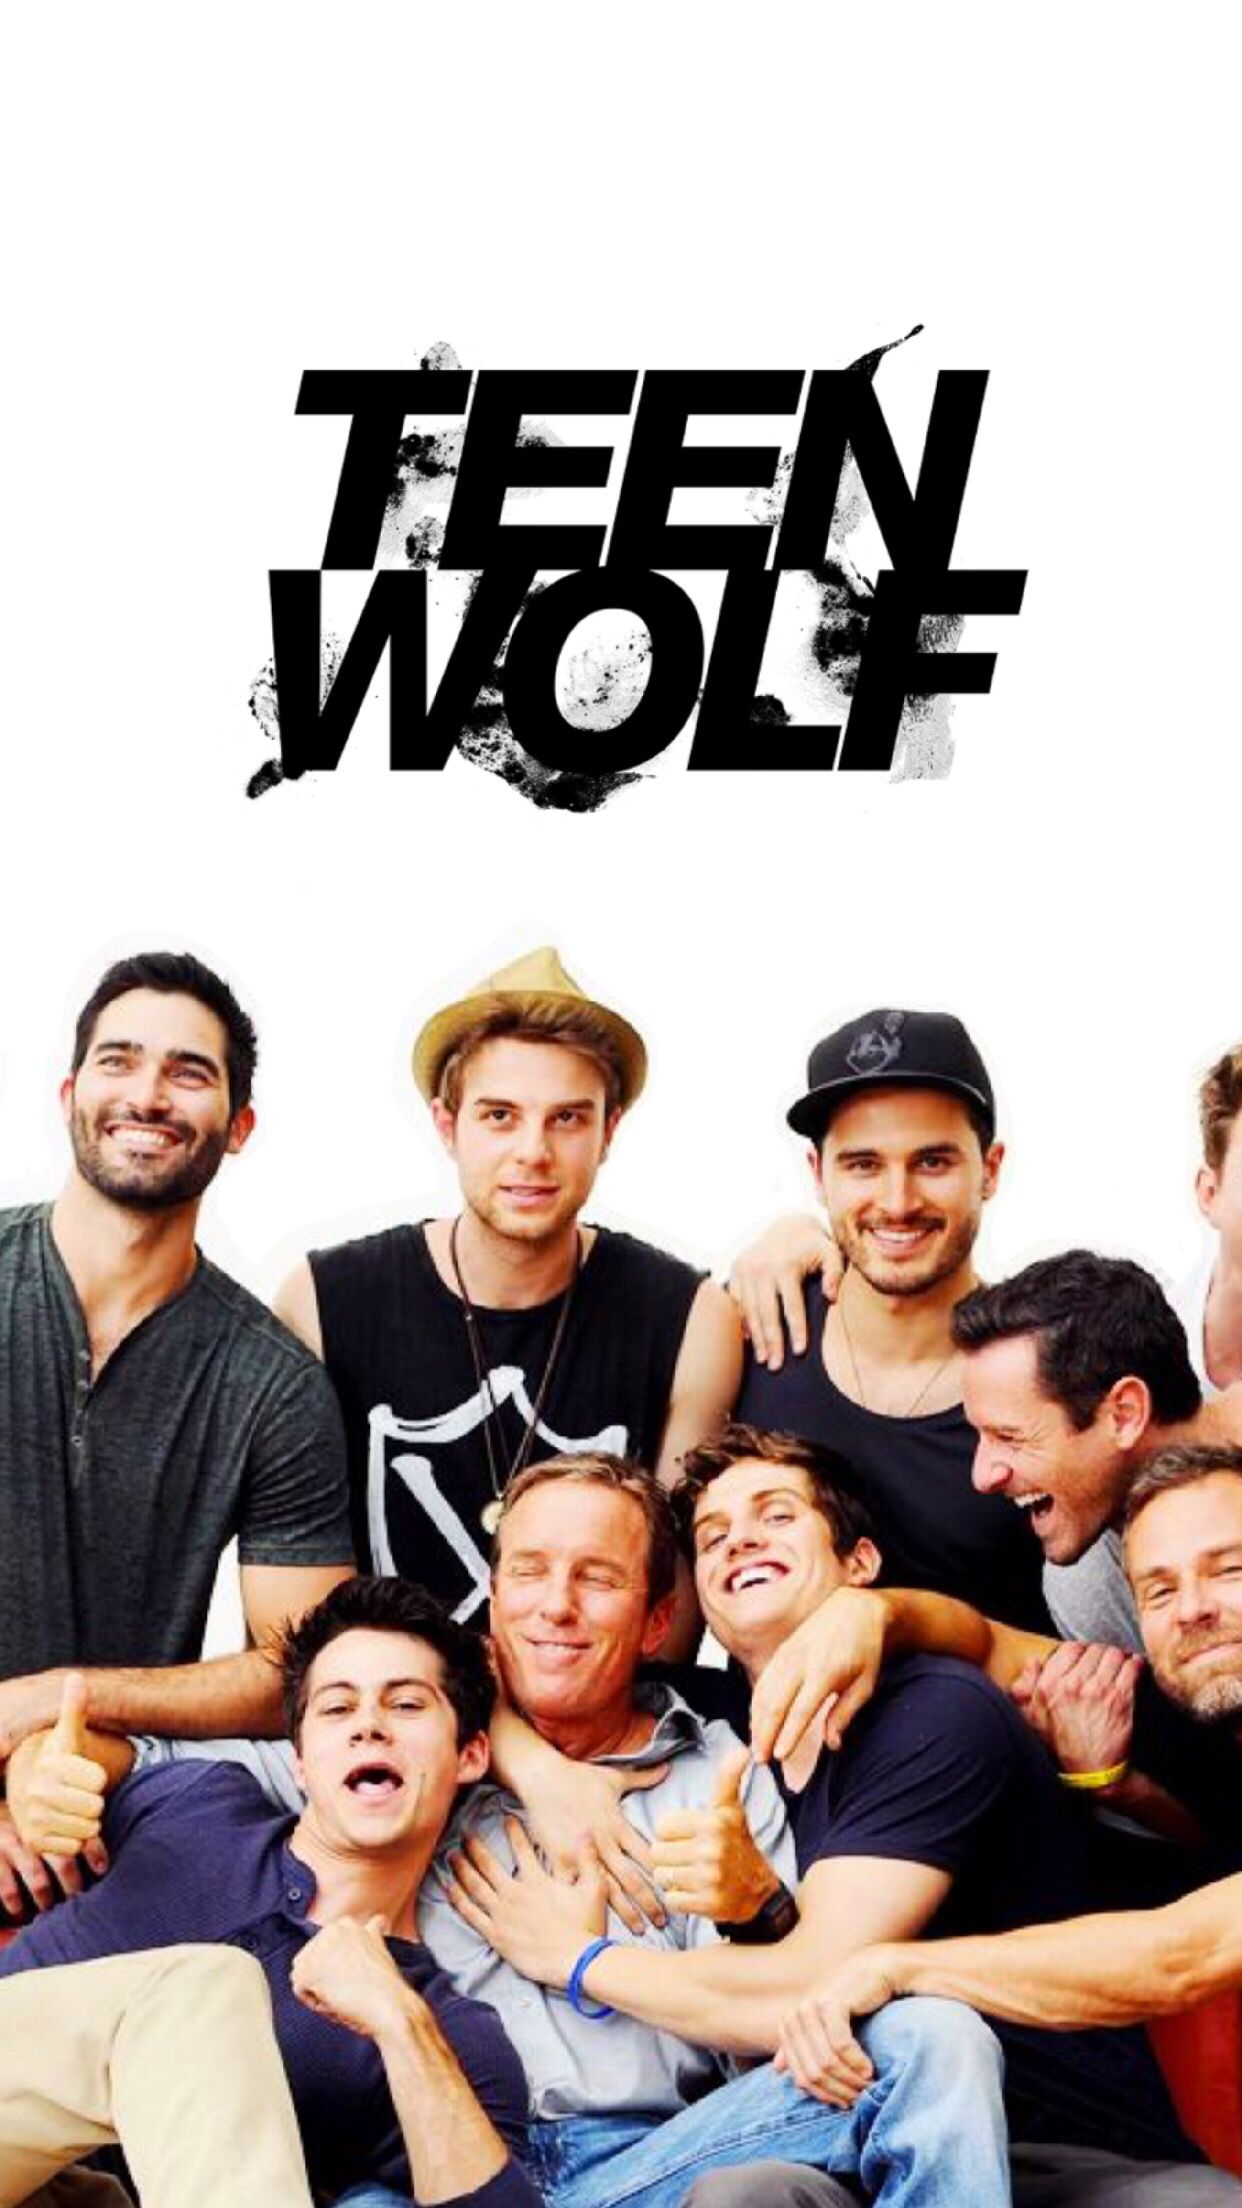 Teen wolf cast